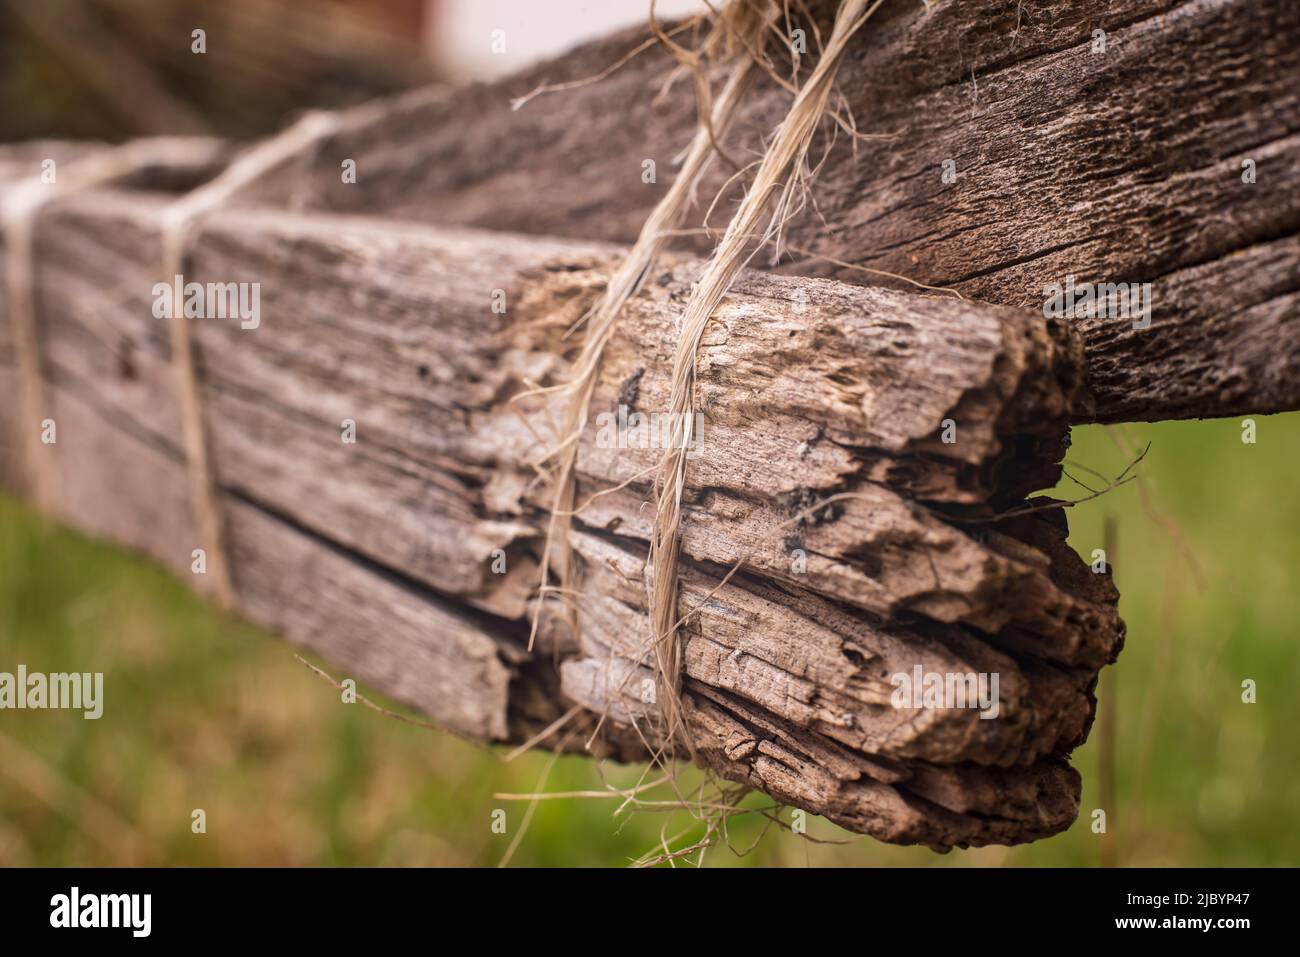 los tablones rotos de una valla rústica de madera reparados provisionalmente con una cuerda Foto de stock